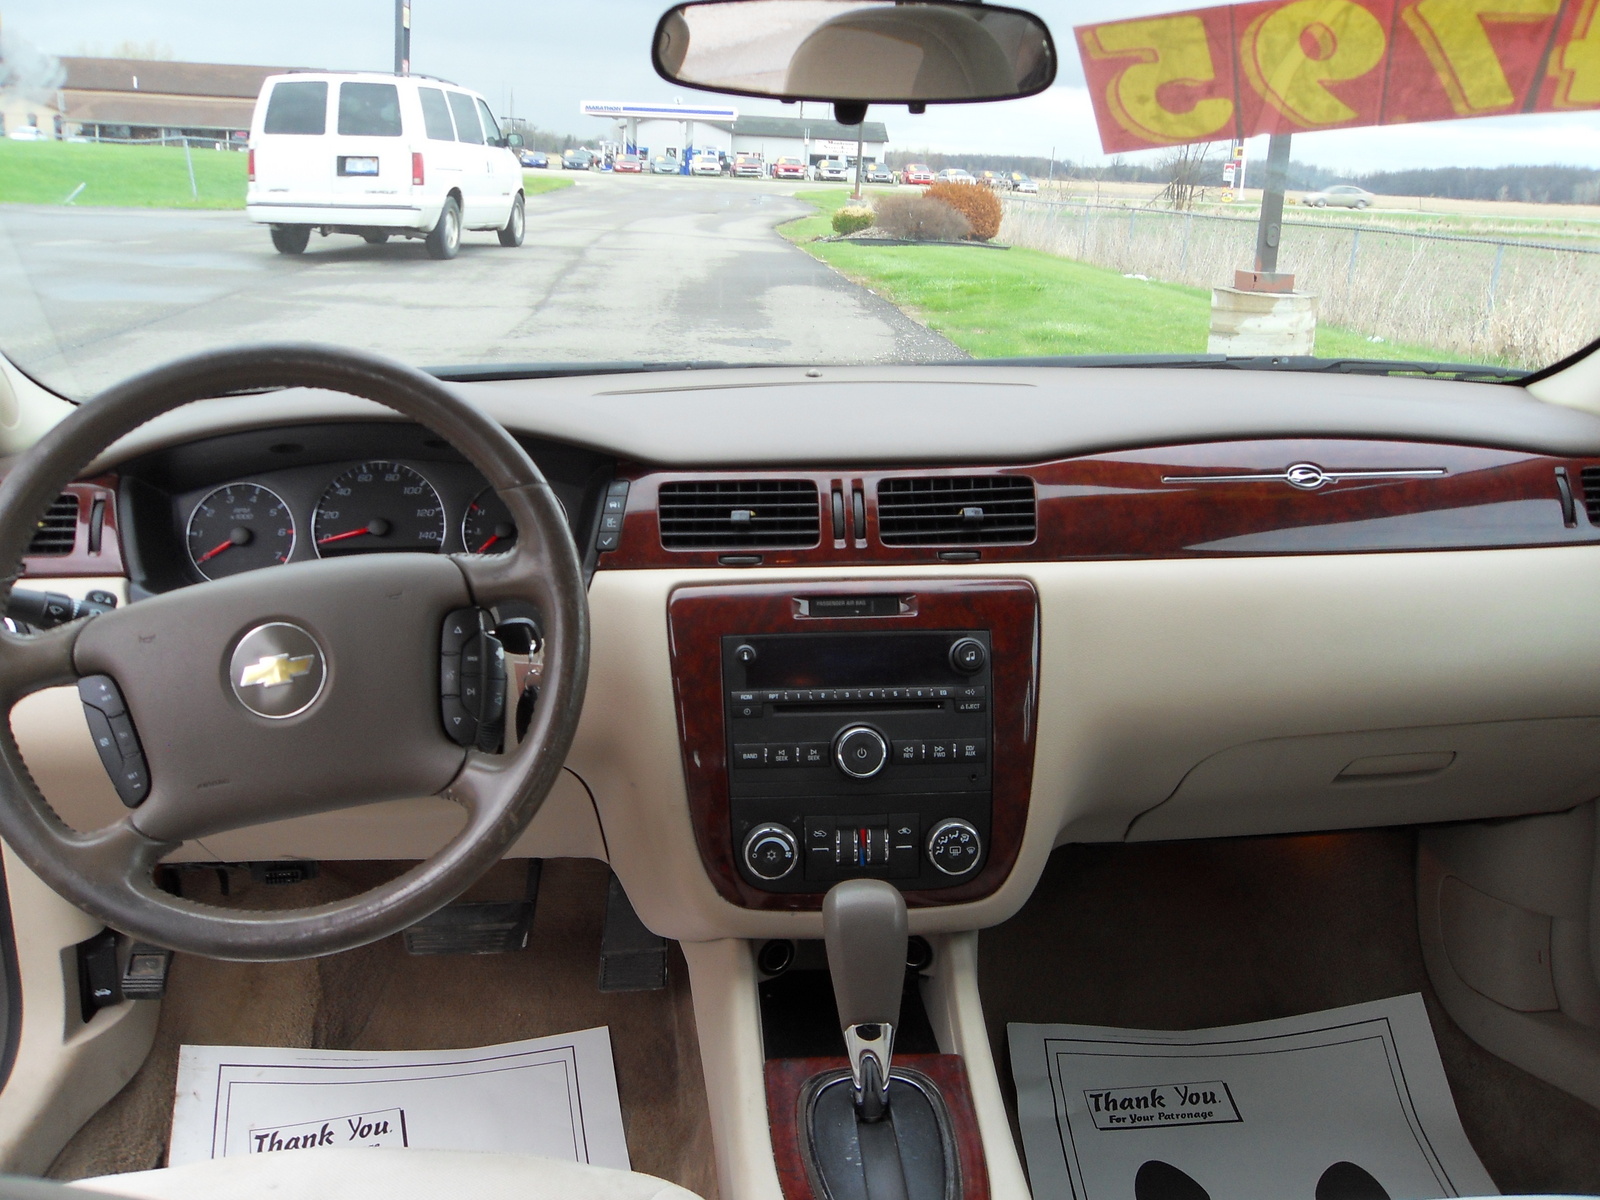 2006 Chevrolet Impala - Interior Pictures - CarGurus